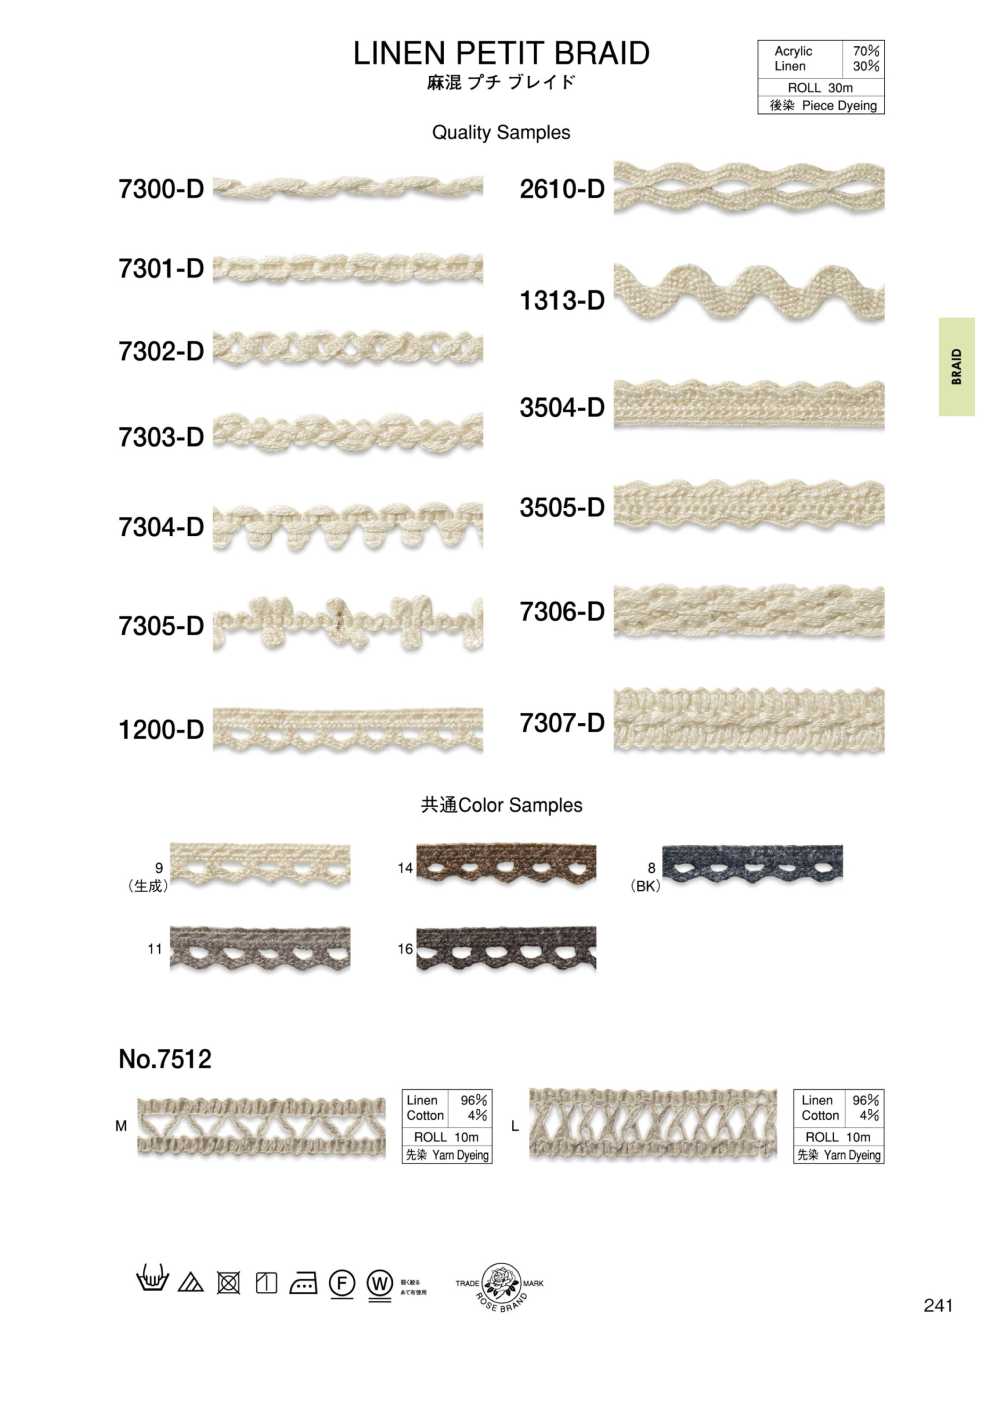 7307-D Linen Blend Petite Braid[Ribbon Tape Cord] ROSE BRAND (Marushin)